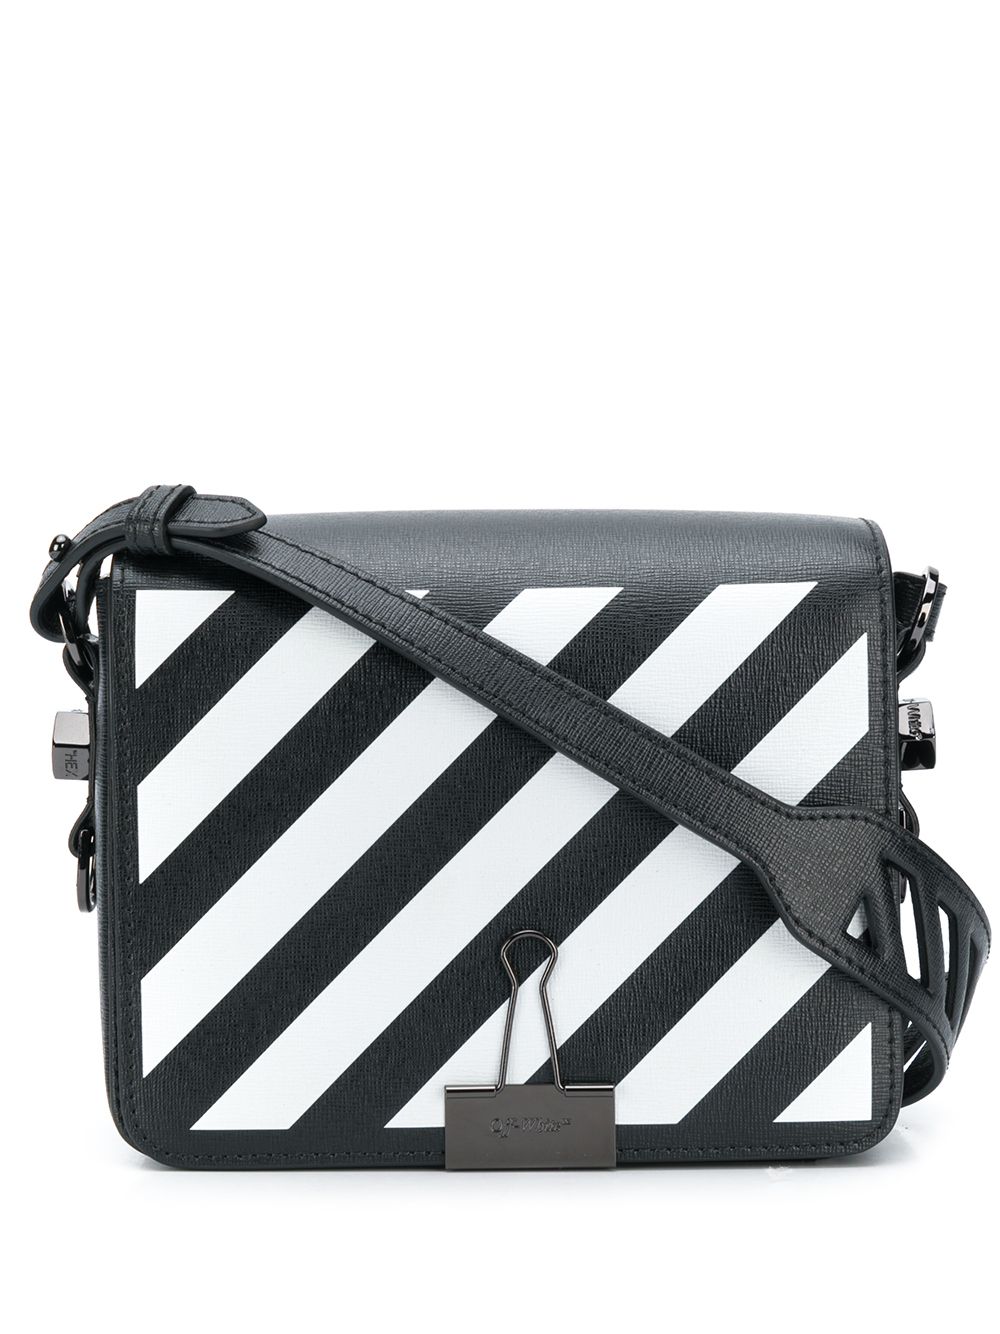 Off-White Black Diagonal Binder Clip Shoulder Bag